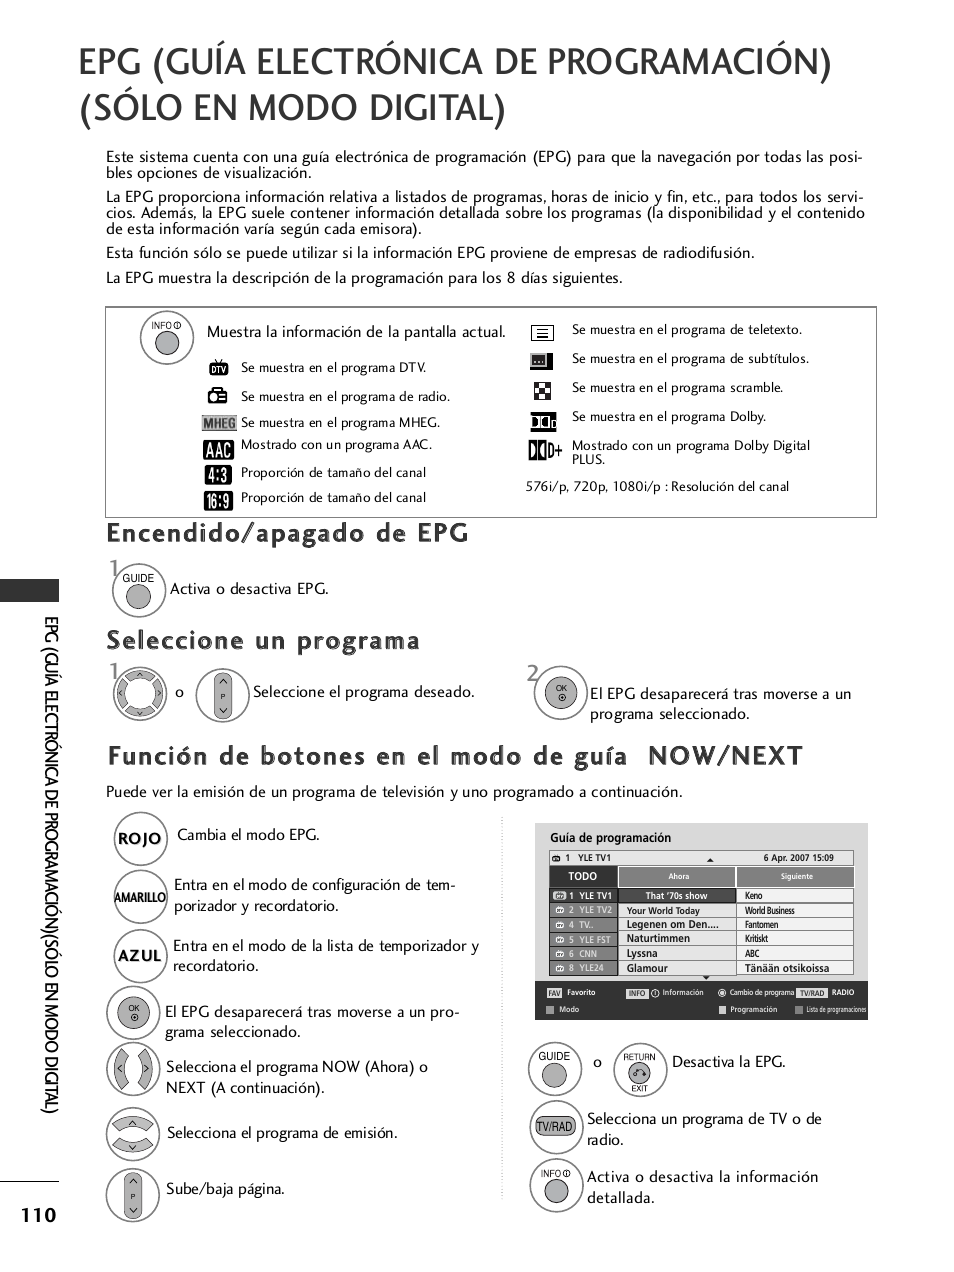 Encendido/apagado de epg, Seleccione un programa, Función de botones en el modo de guía now/next | LG 32LH40 Manual del usuario | Página 112 / 180